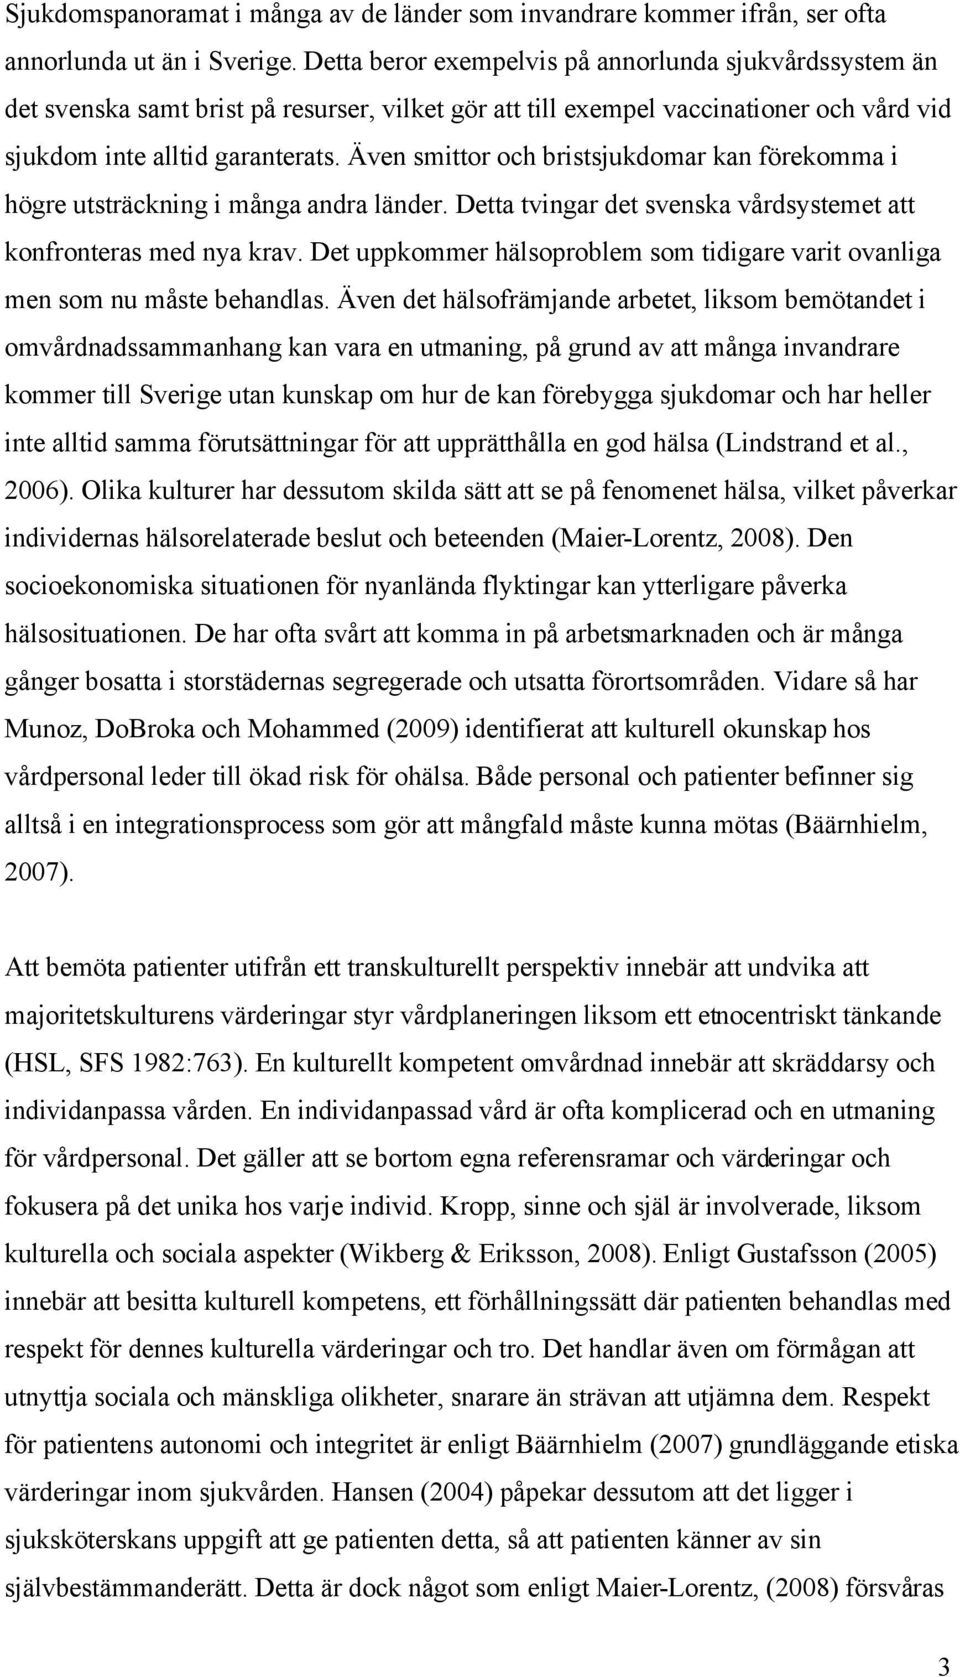 Även smittor och bristsjukdomar kan förekomma i högre utsträckning i många andra länder. Detta tvingar det svenska vårdsystemet att konfronteras med nya krav.